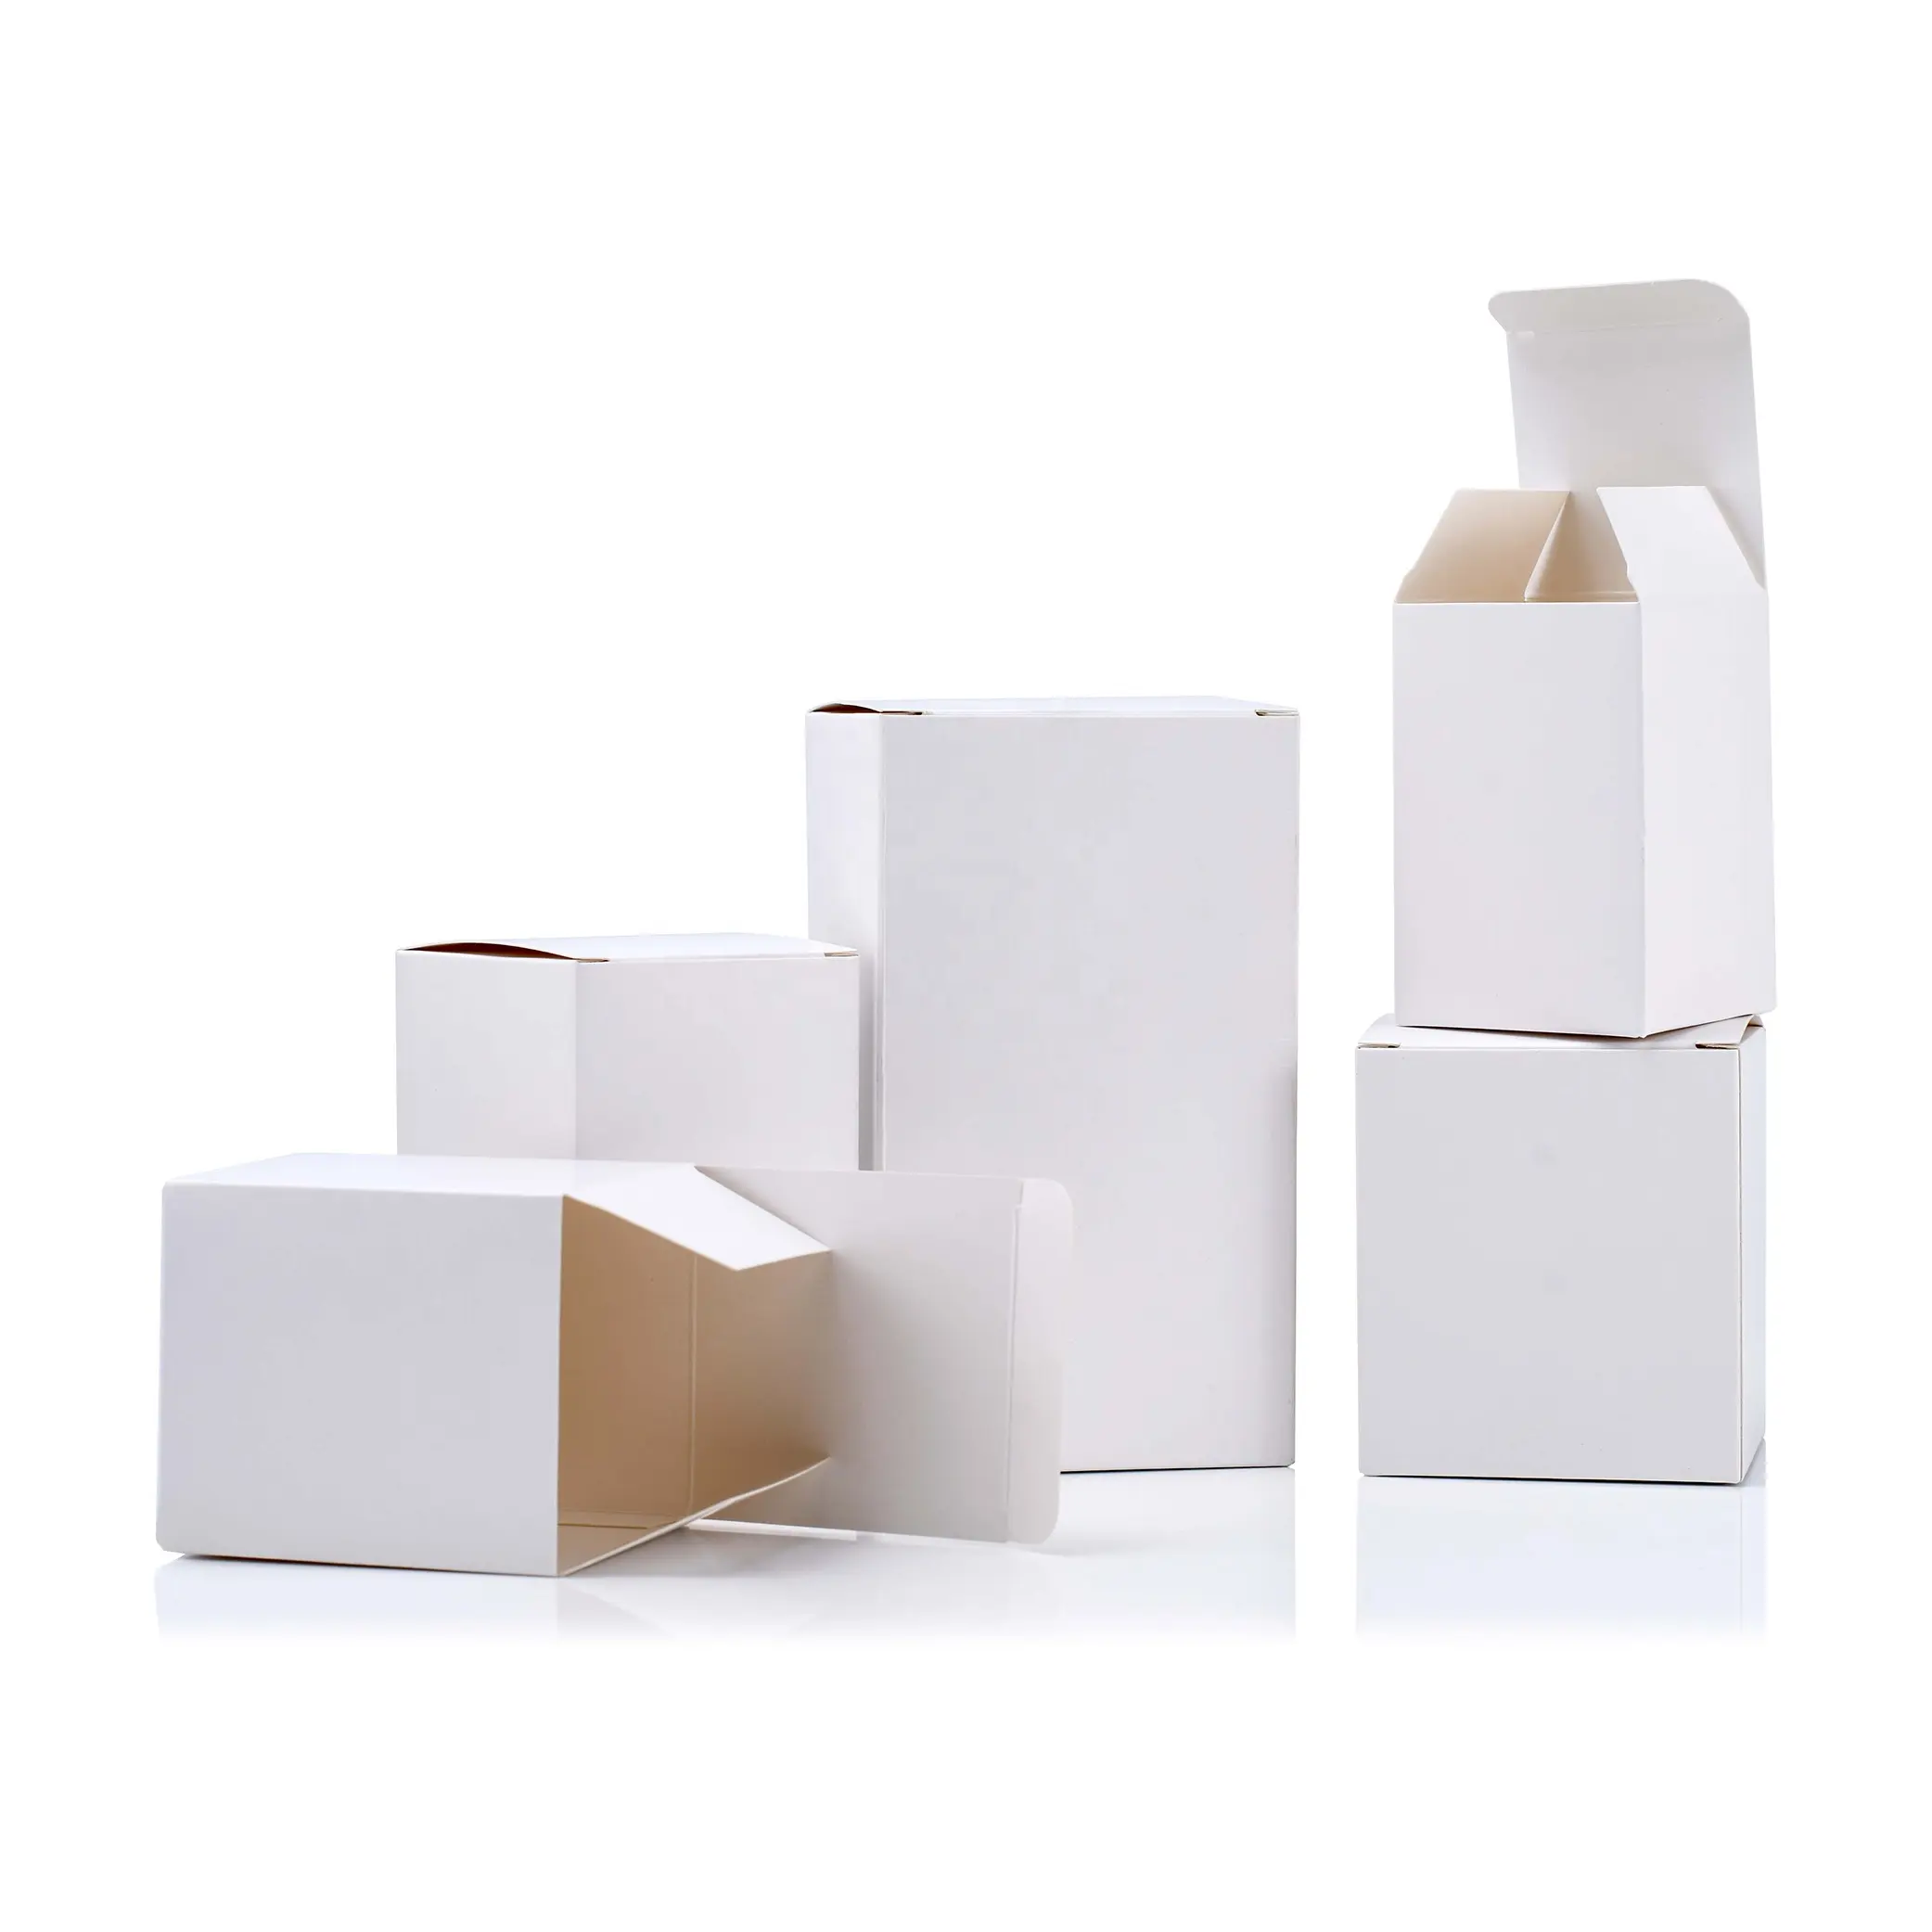 Özel boş kağit kutu 350g karton hediye ambalaj kutuları nakliye paketi kozmetik çekmece kağıt beyaz Kraft kağıt kağit kutu